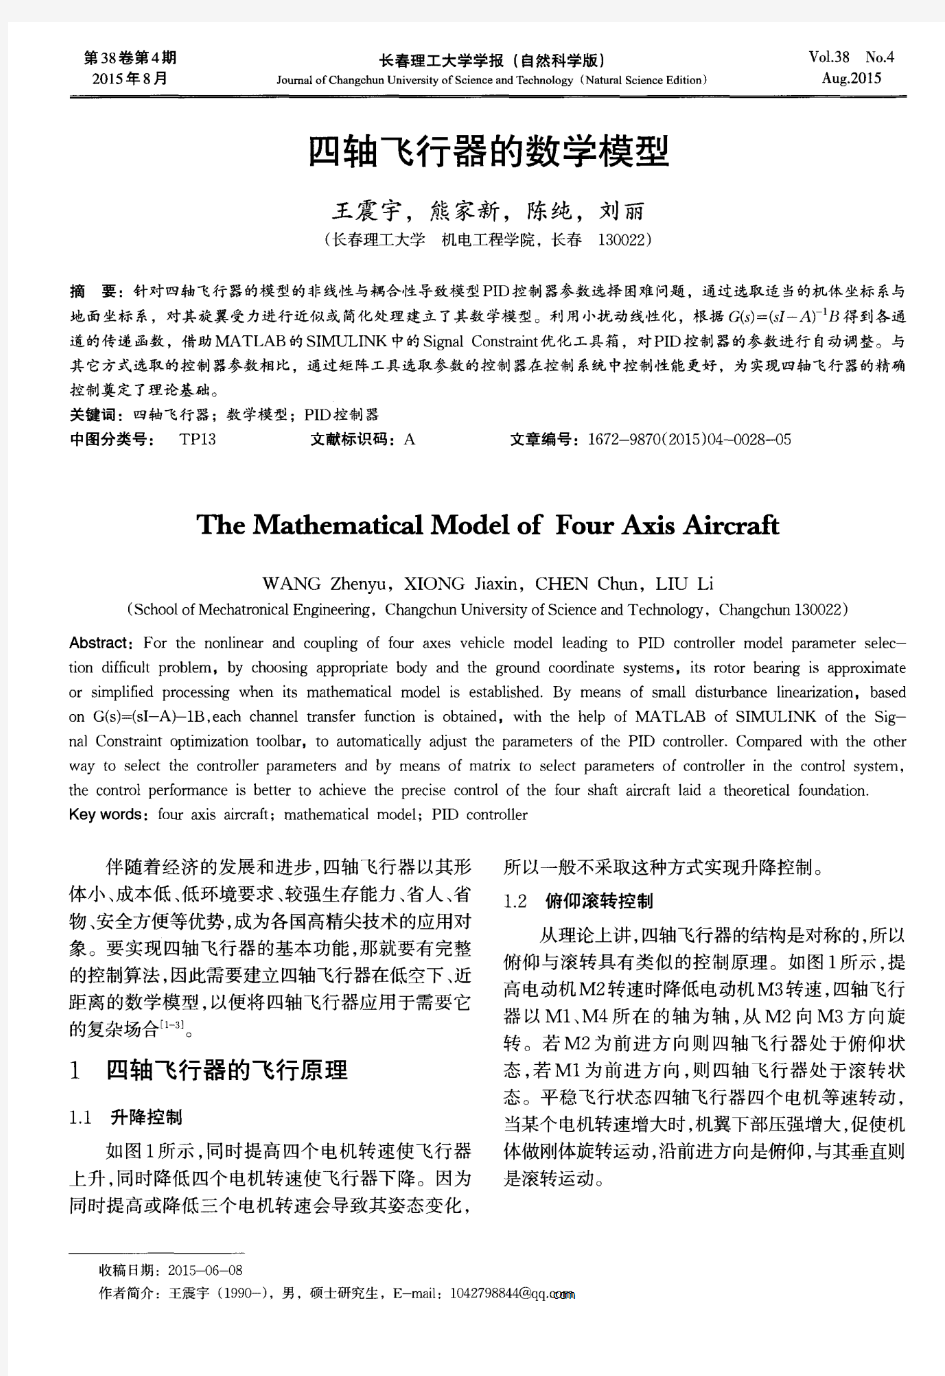 四轴飞行器的数学模型